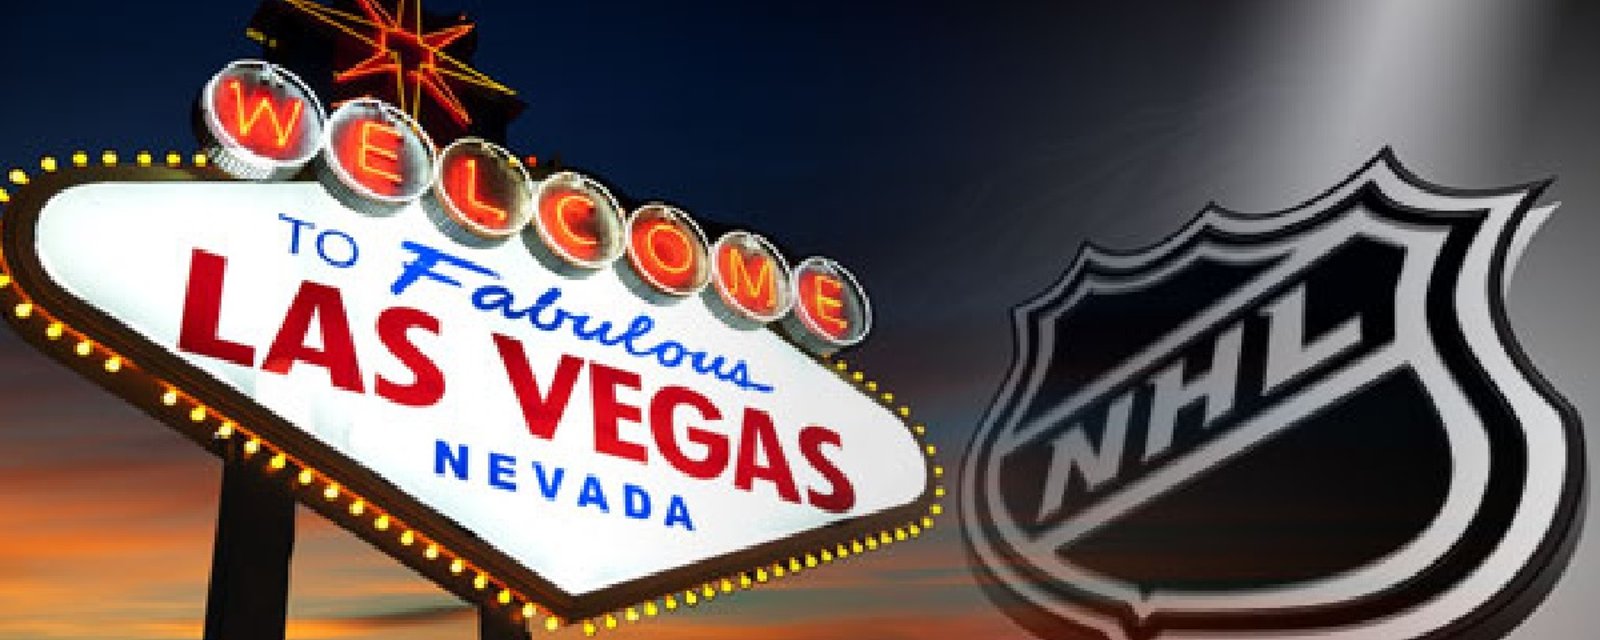 On connait la date de l'annonce du nom et logo de l'équipe de Las Vegas!